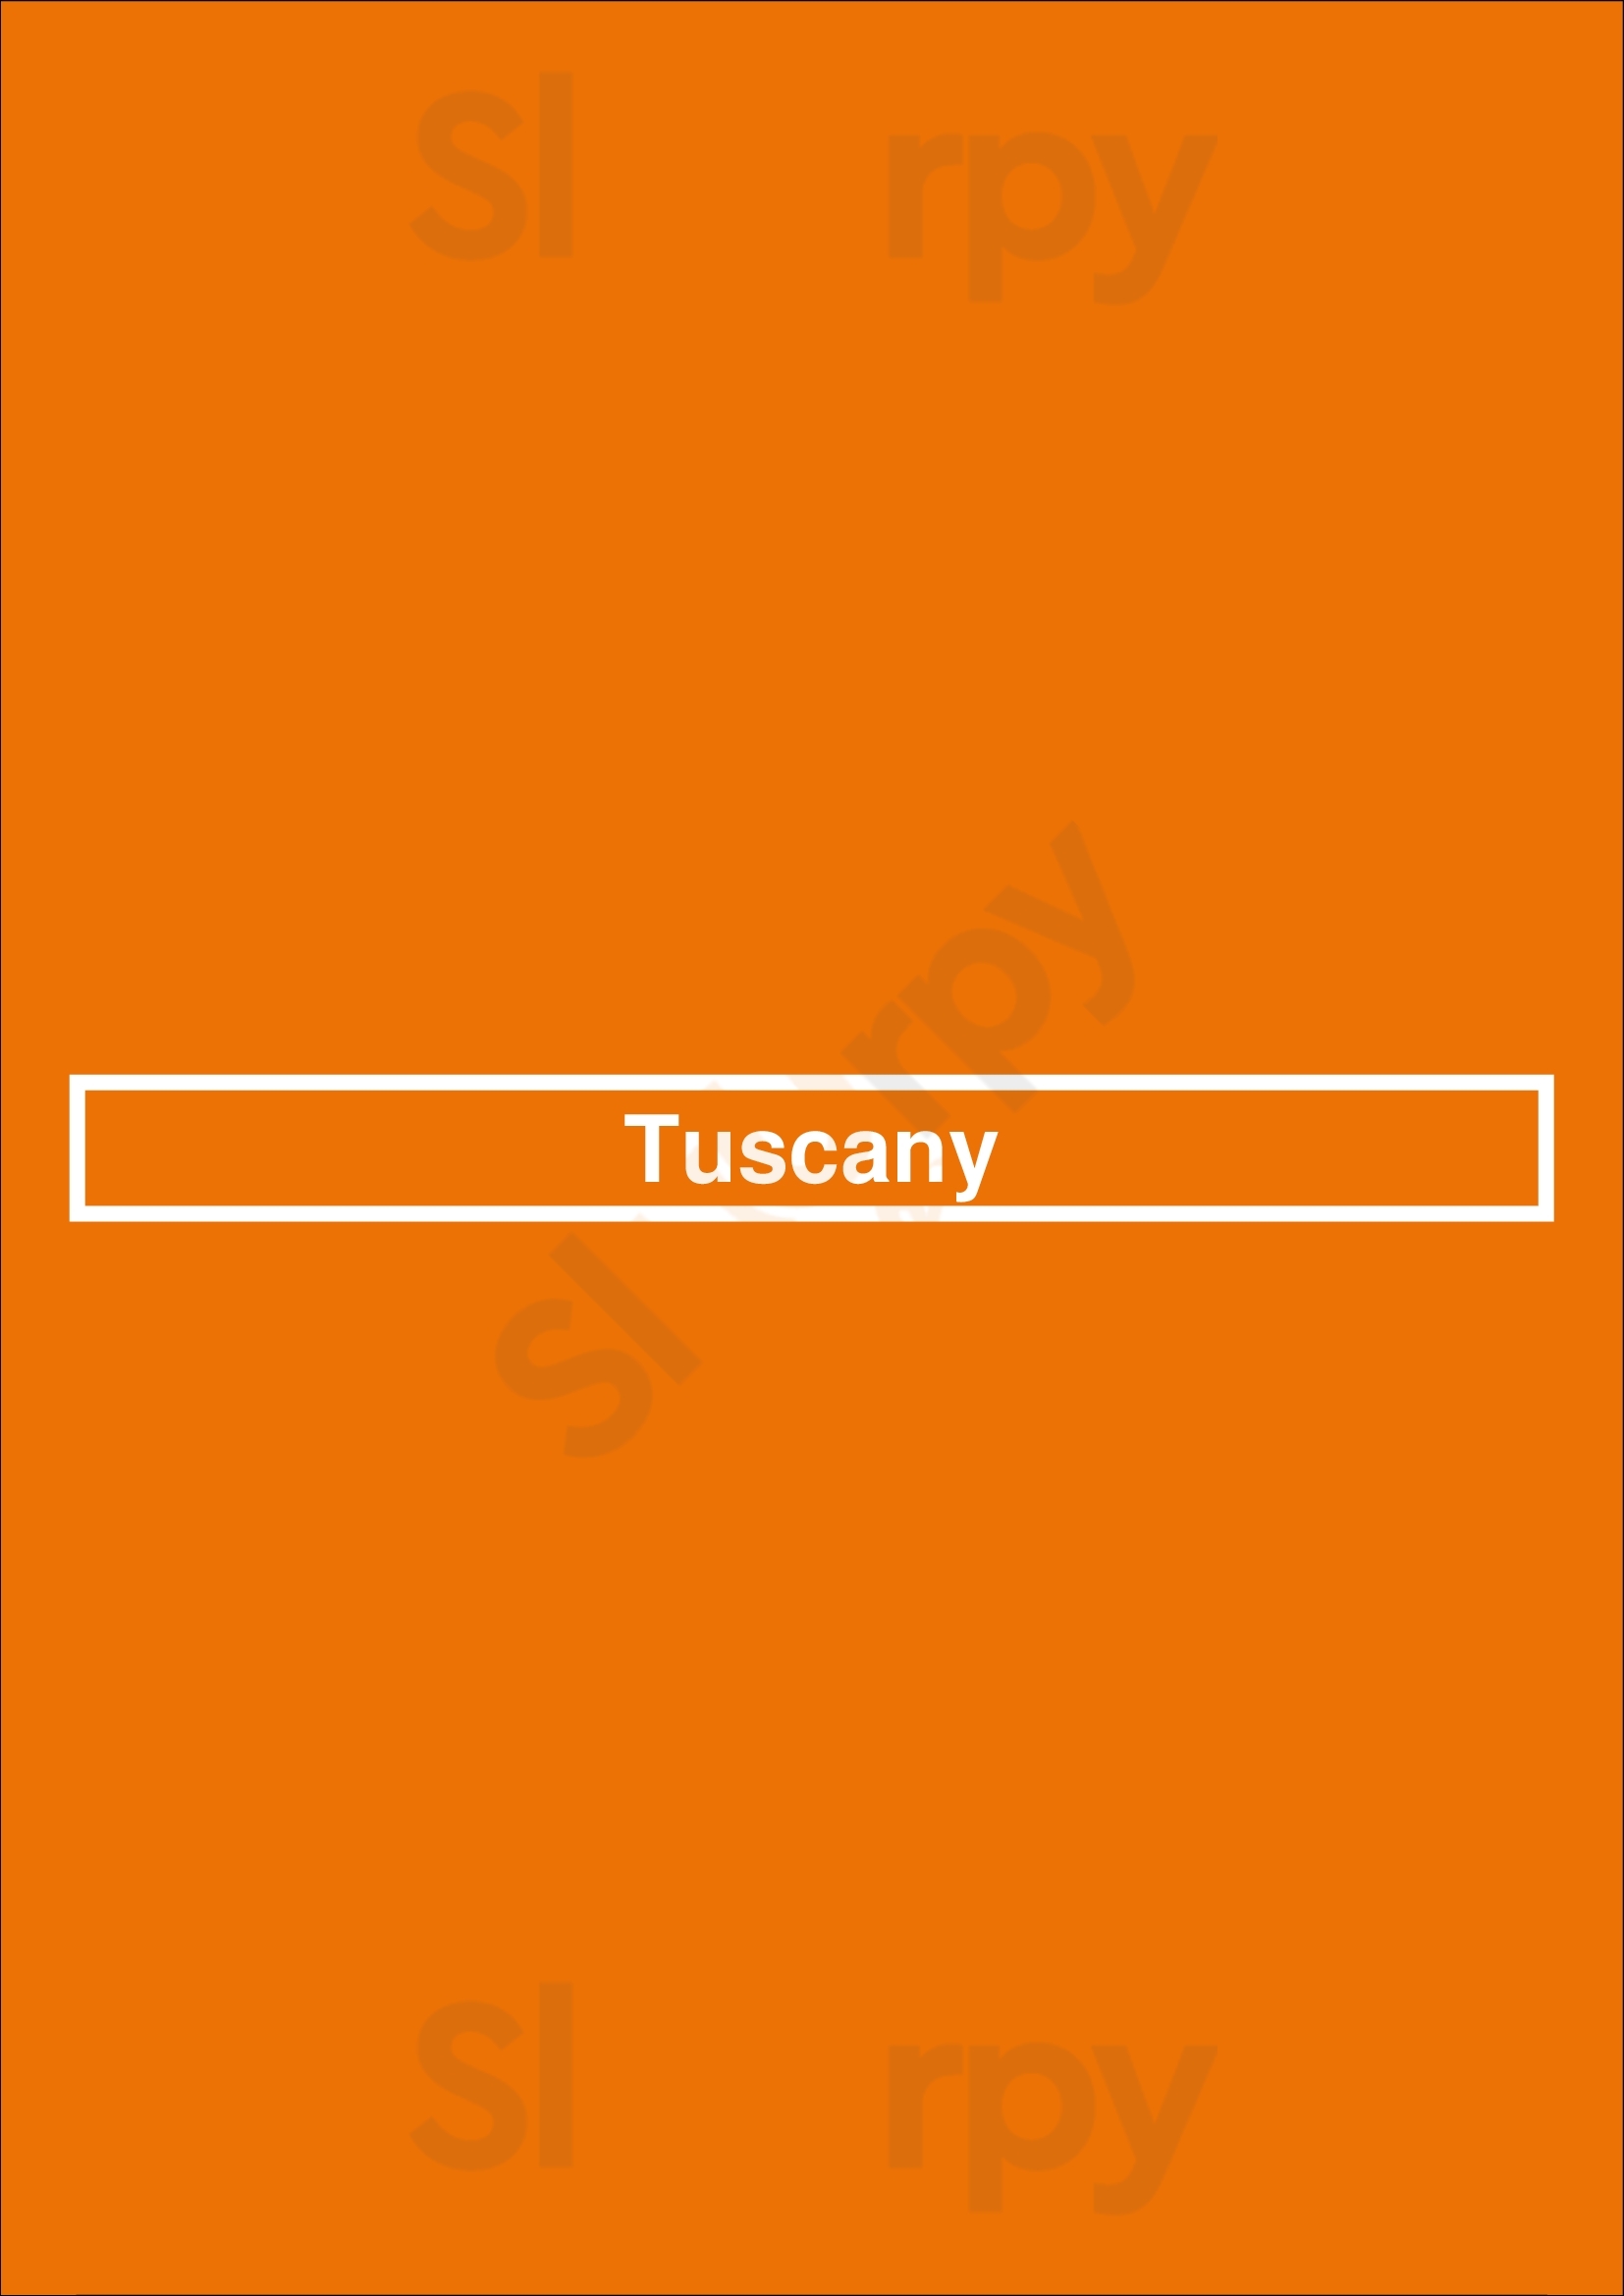 Tuscany Salt Lake City Menu - 1